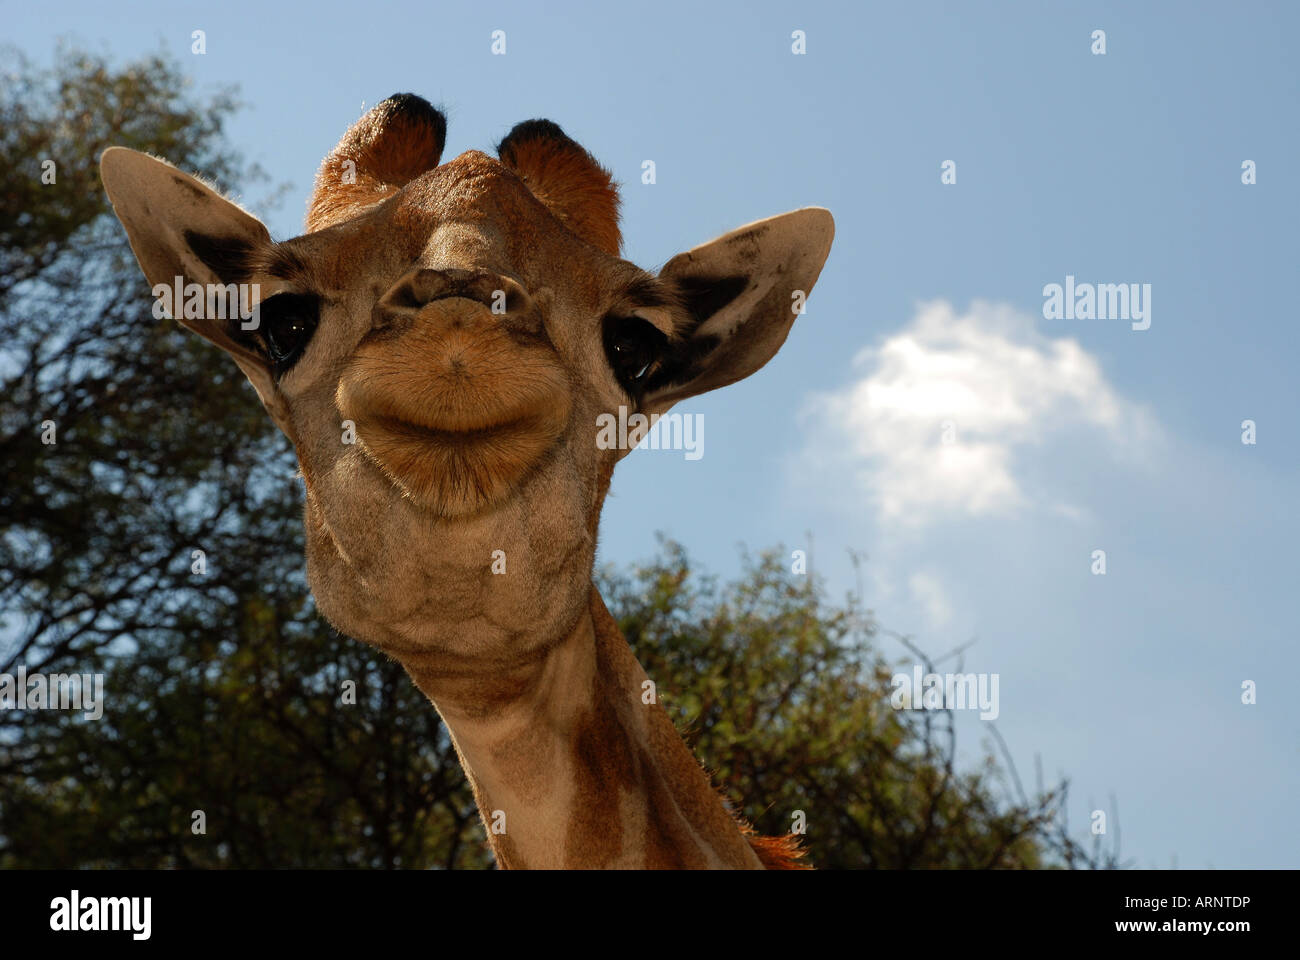 Carino South African Giraffe Closeup Foto Stock